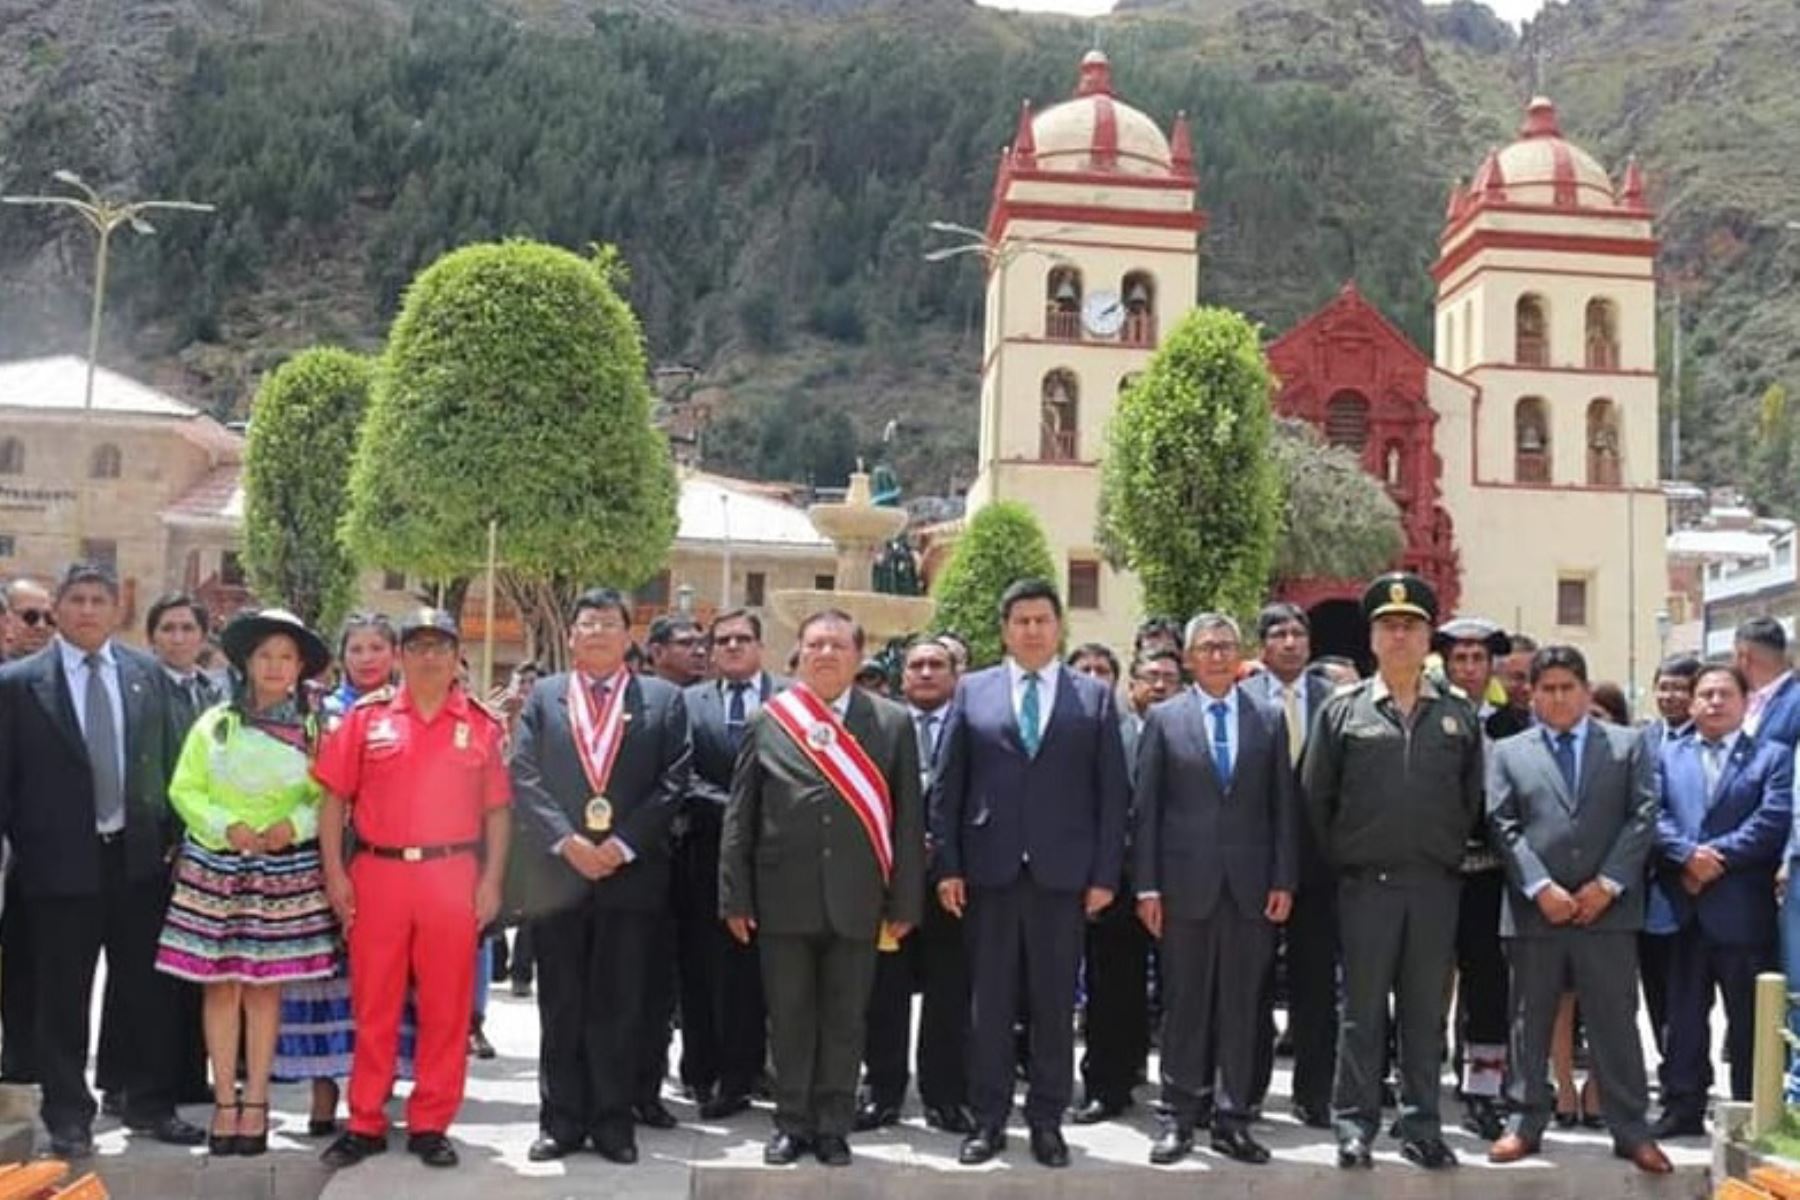 Gobernador Maciste Díaz asume cargo en Huancavelica para el período 2019-2022 y ratifica lucha contra corrupción.